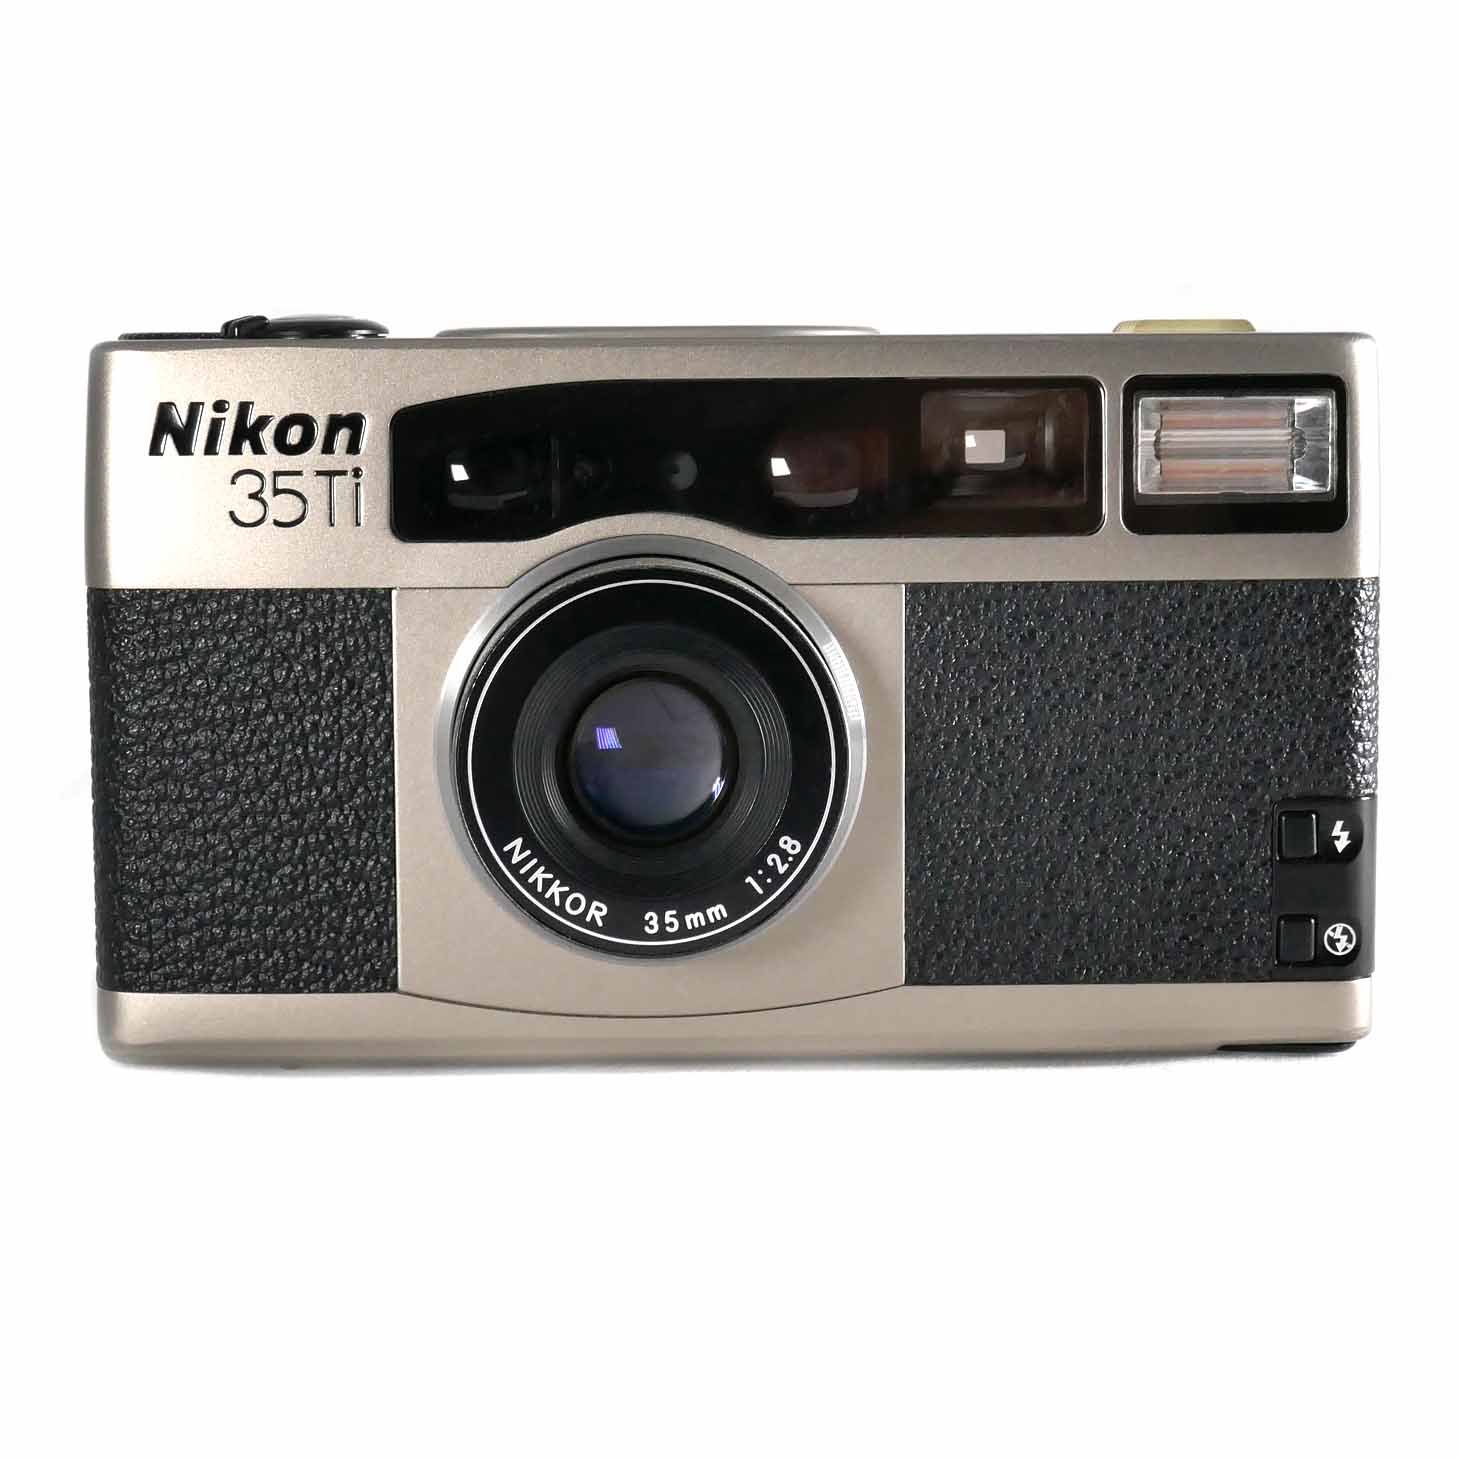 Nikon 35TI QUARTZ DATE - フィルムカメラ